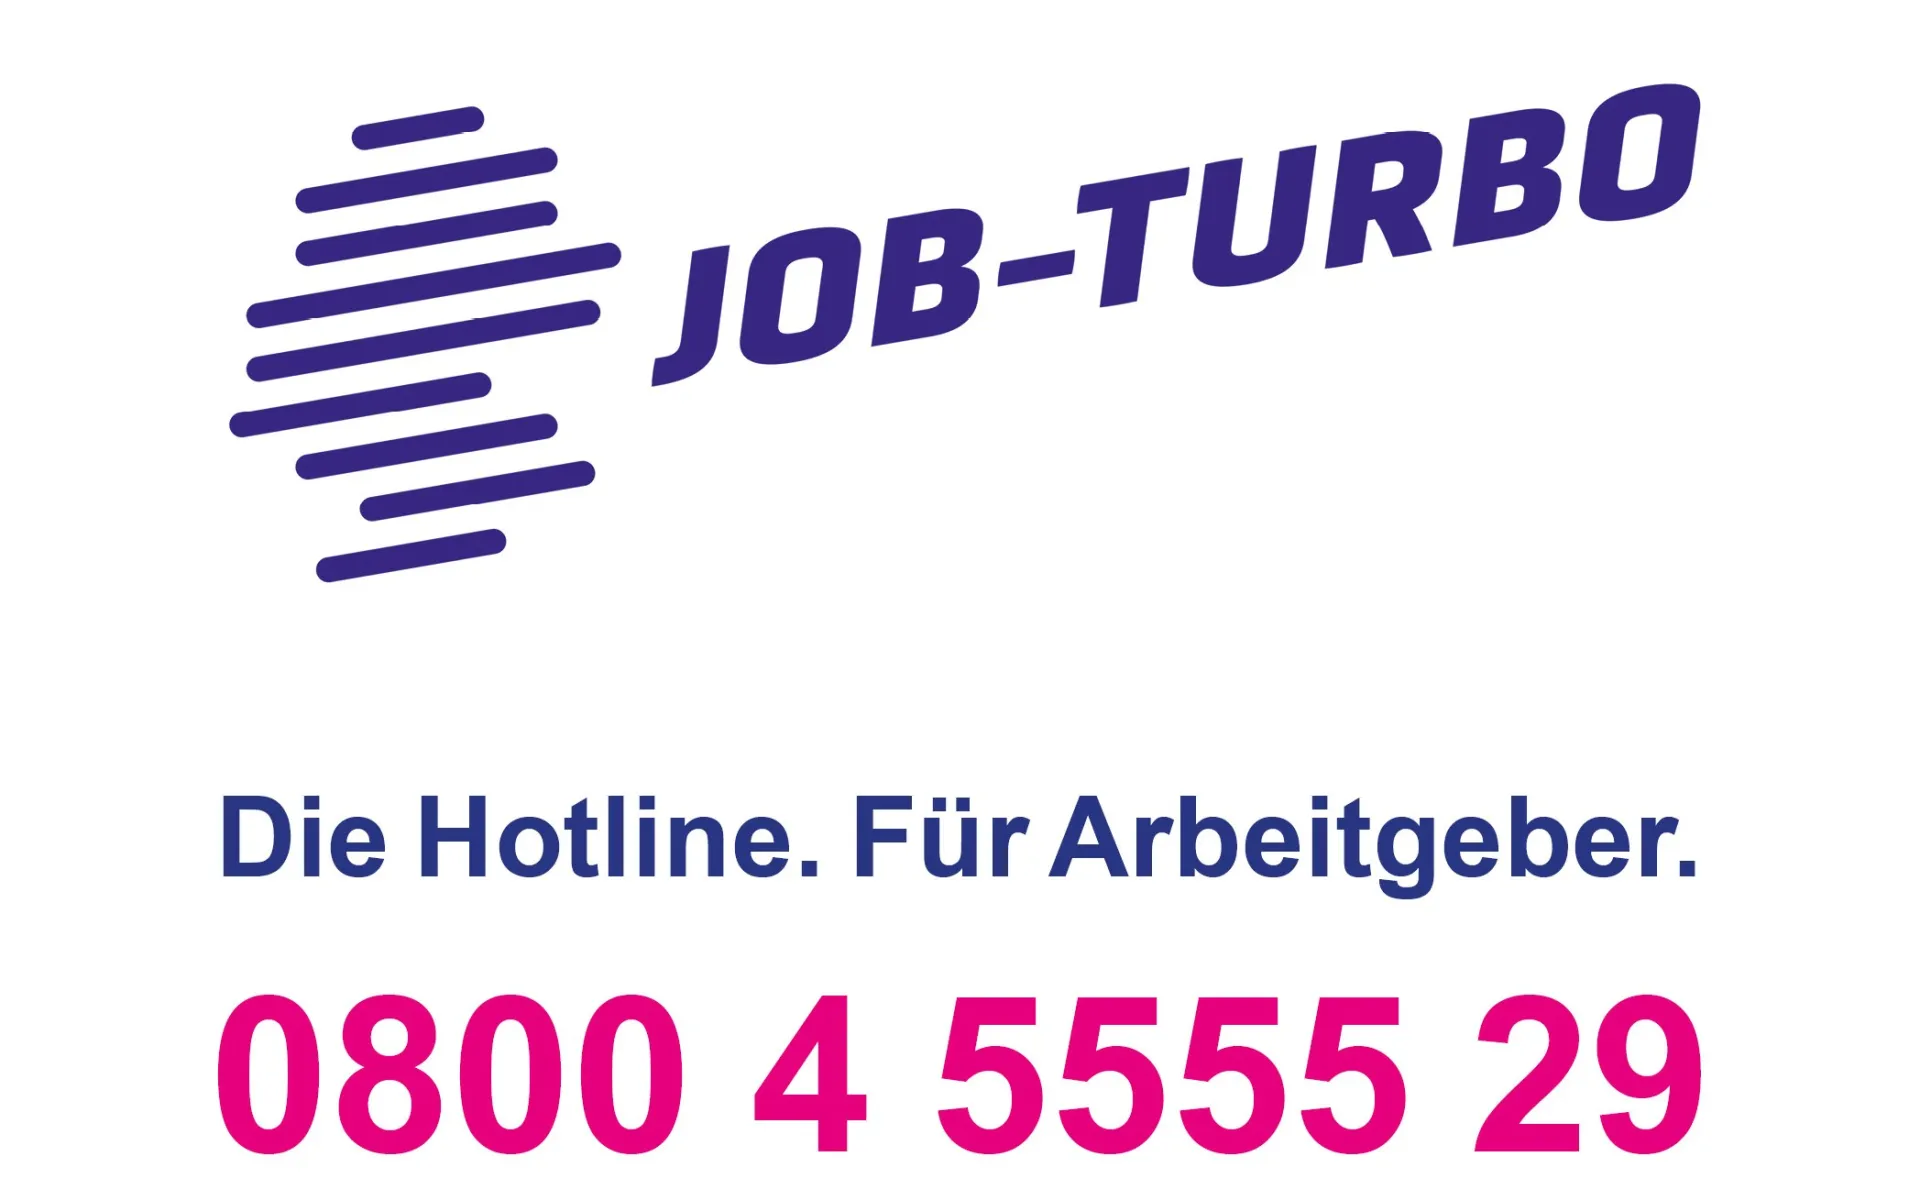 Job-Turbo. Die Hotline. Für Arbeitgeber. 0800 4 5555 29 